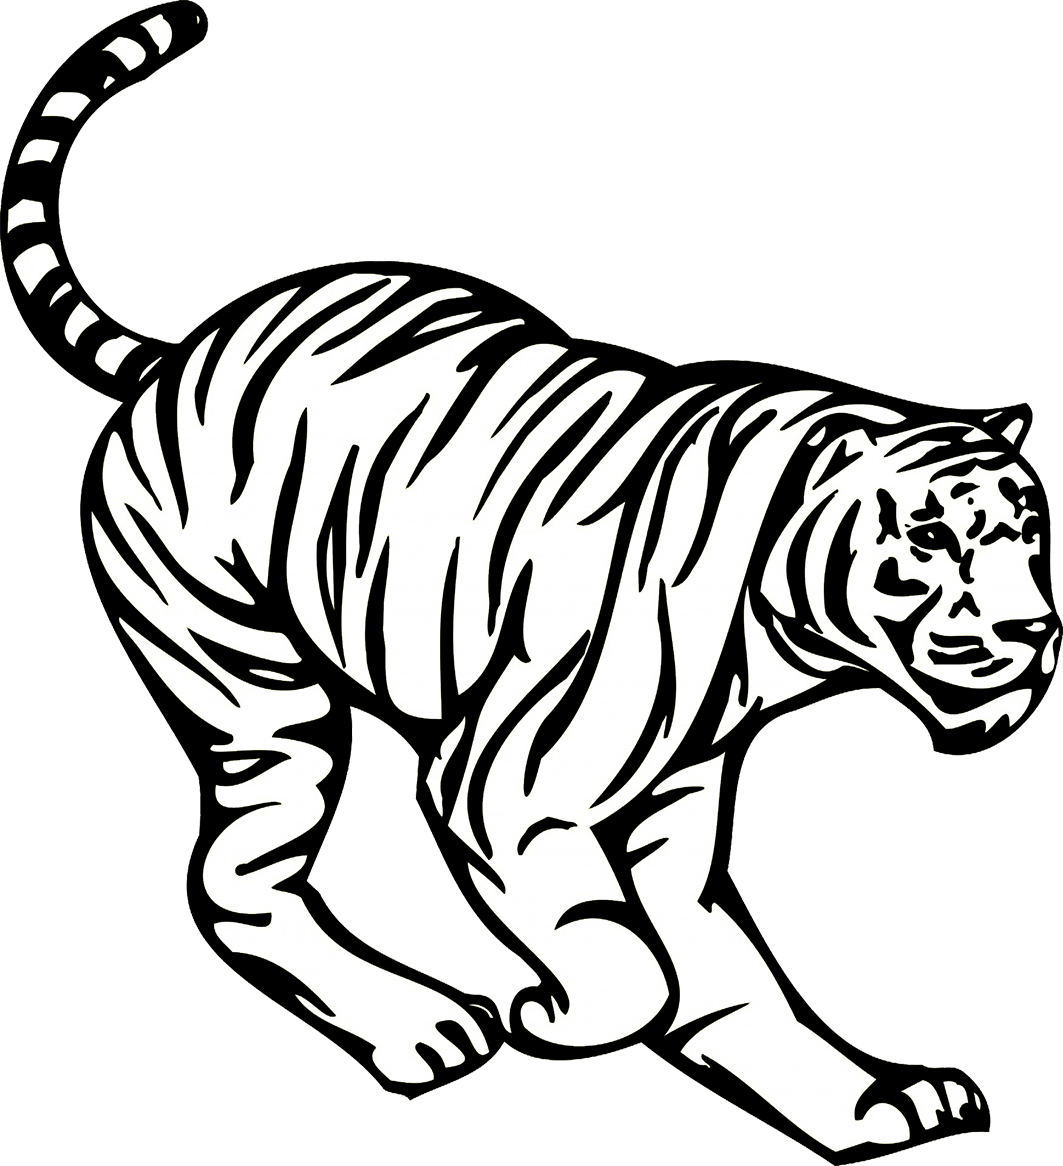 Tiger Clipart